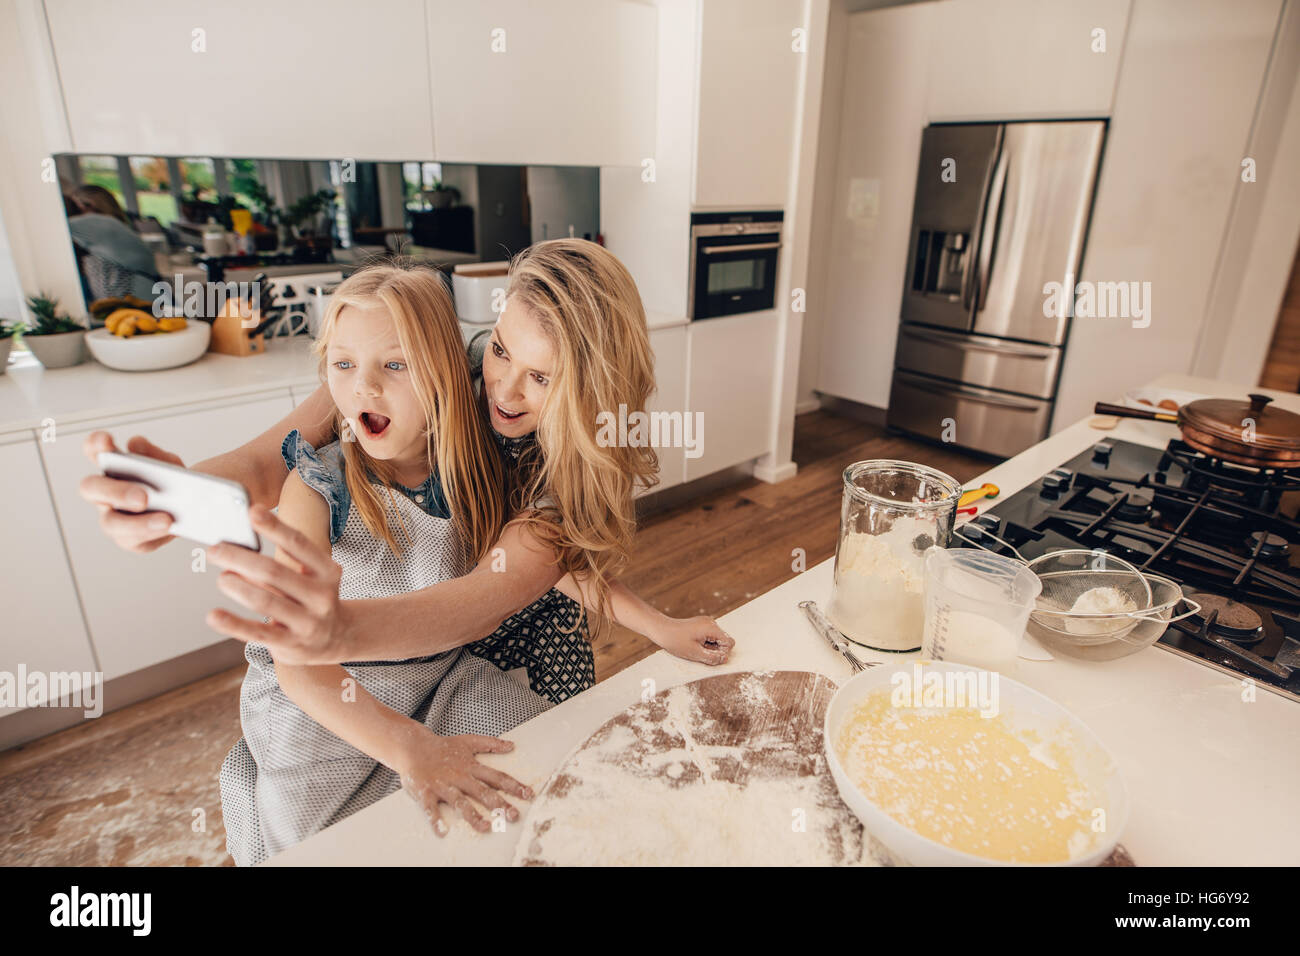 Glückliche junge Mutter nehmen Selfie mit ihrer Tochter in der Küche. Junge Frau und kleine Mädchen, die Zubereitung von Essen in Küche nehmen Selbstbildnis mit mobilen pho Stockfoto